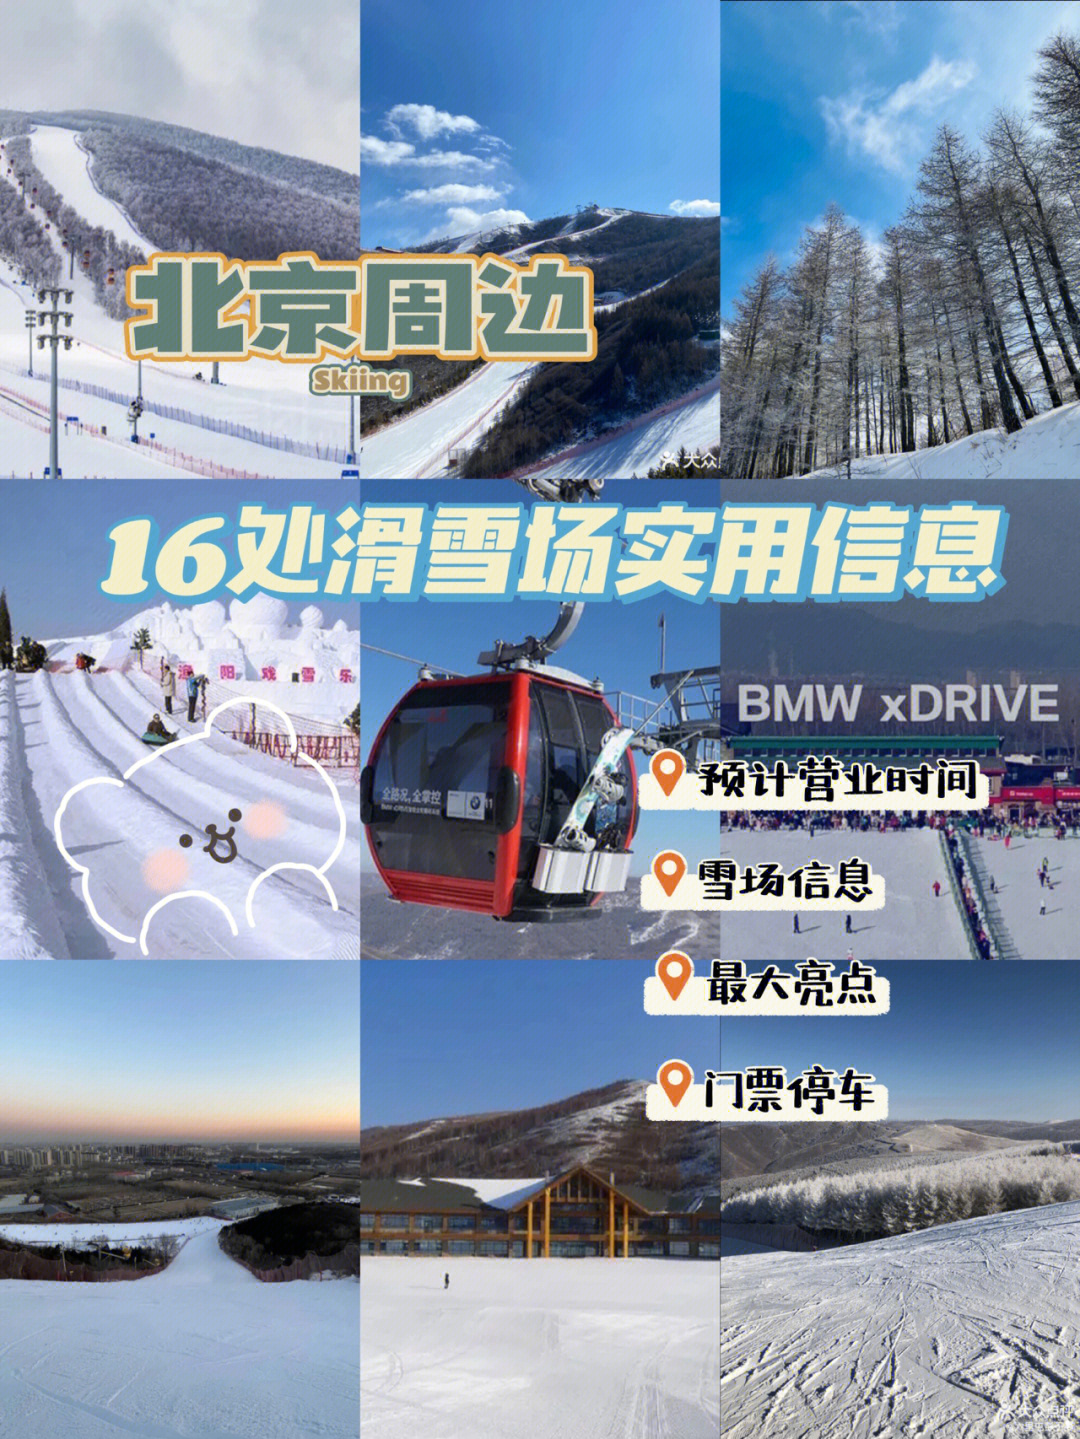 6661566处北京周边滑雪场实用信息6015